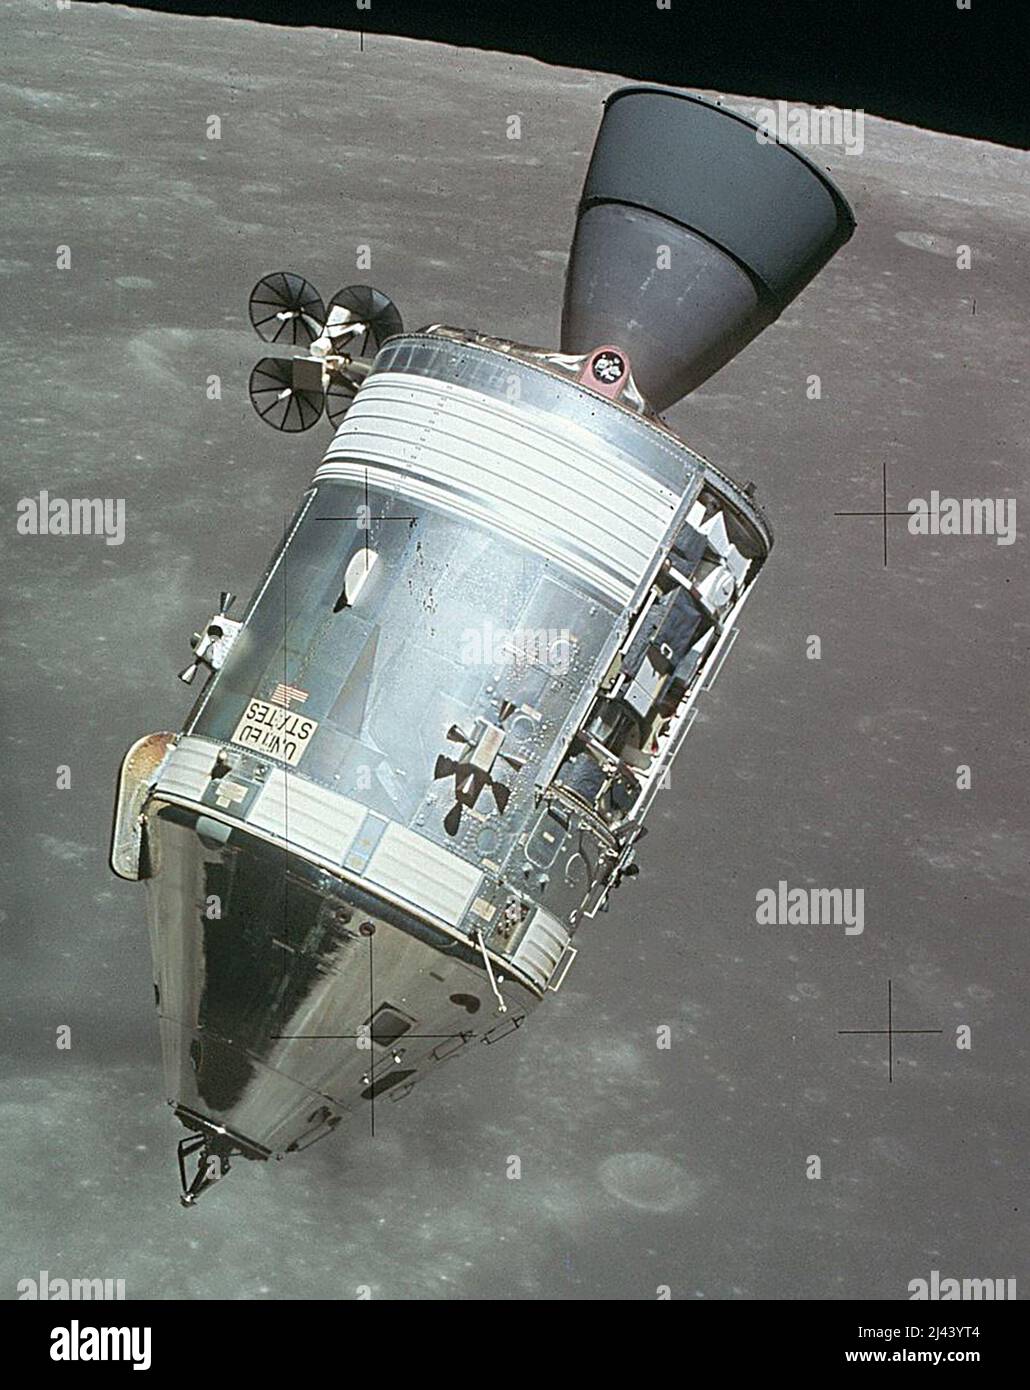 Das Kommando- und Servicemodul Apollo 15 in der Mondbahn, fotografiert von Falcon Stockfoto